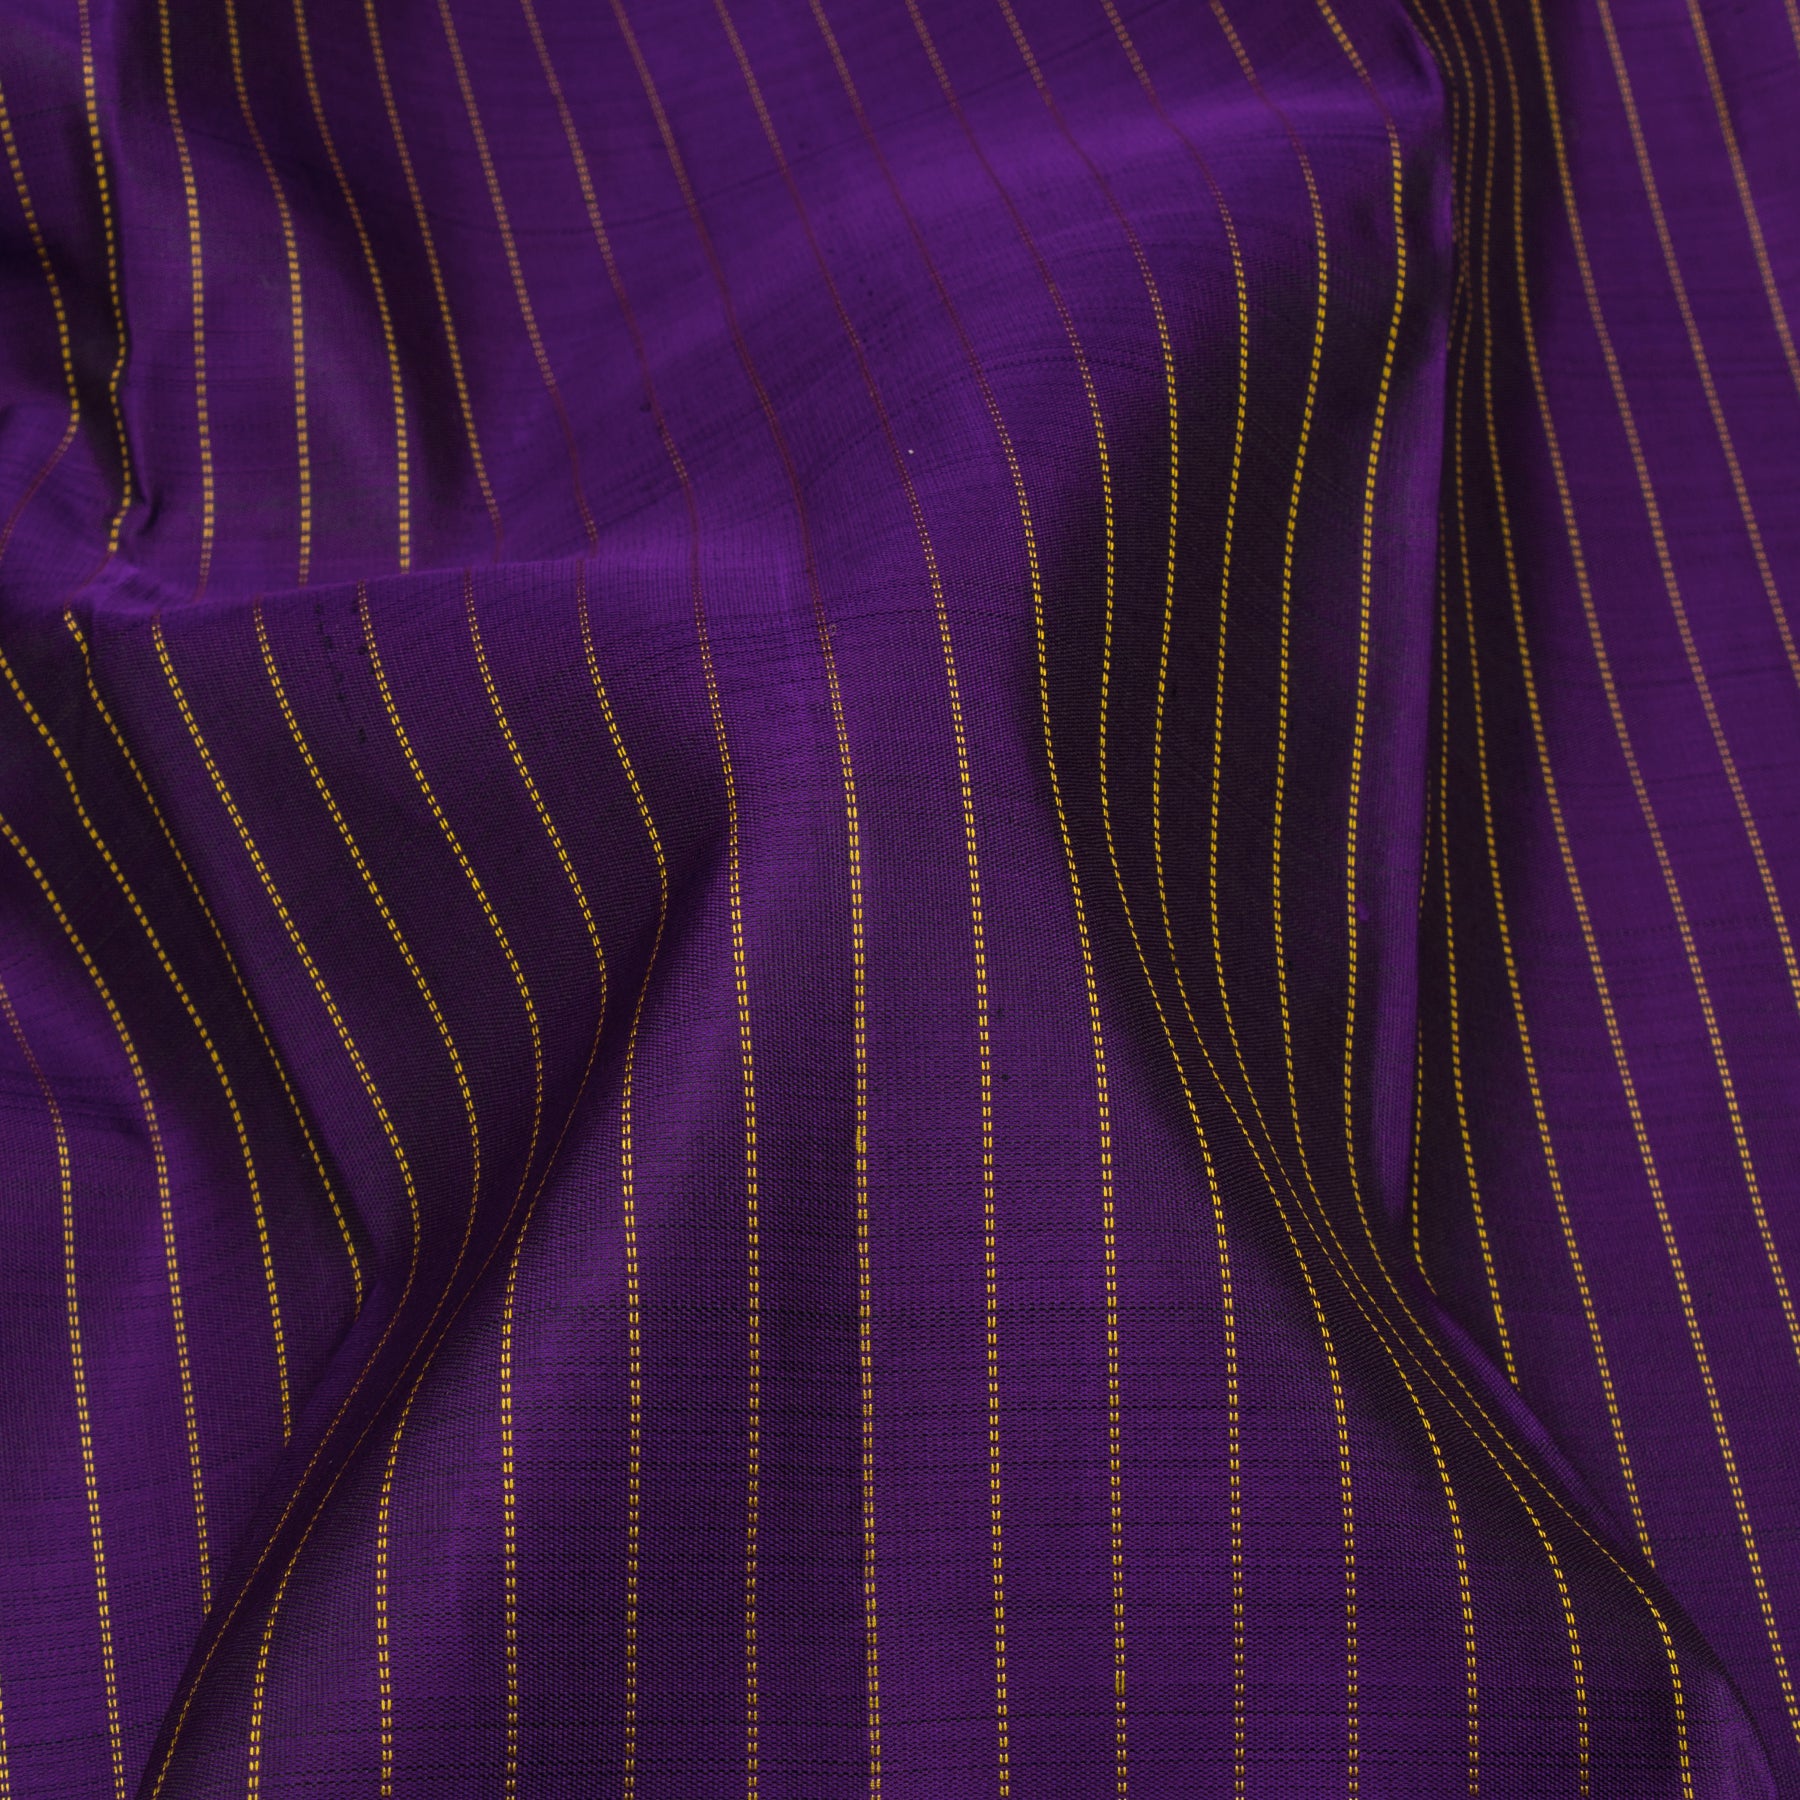 Kanakavalli Kanjivaram Silk Sari 23-599-HS001-12530 - Fabric View